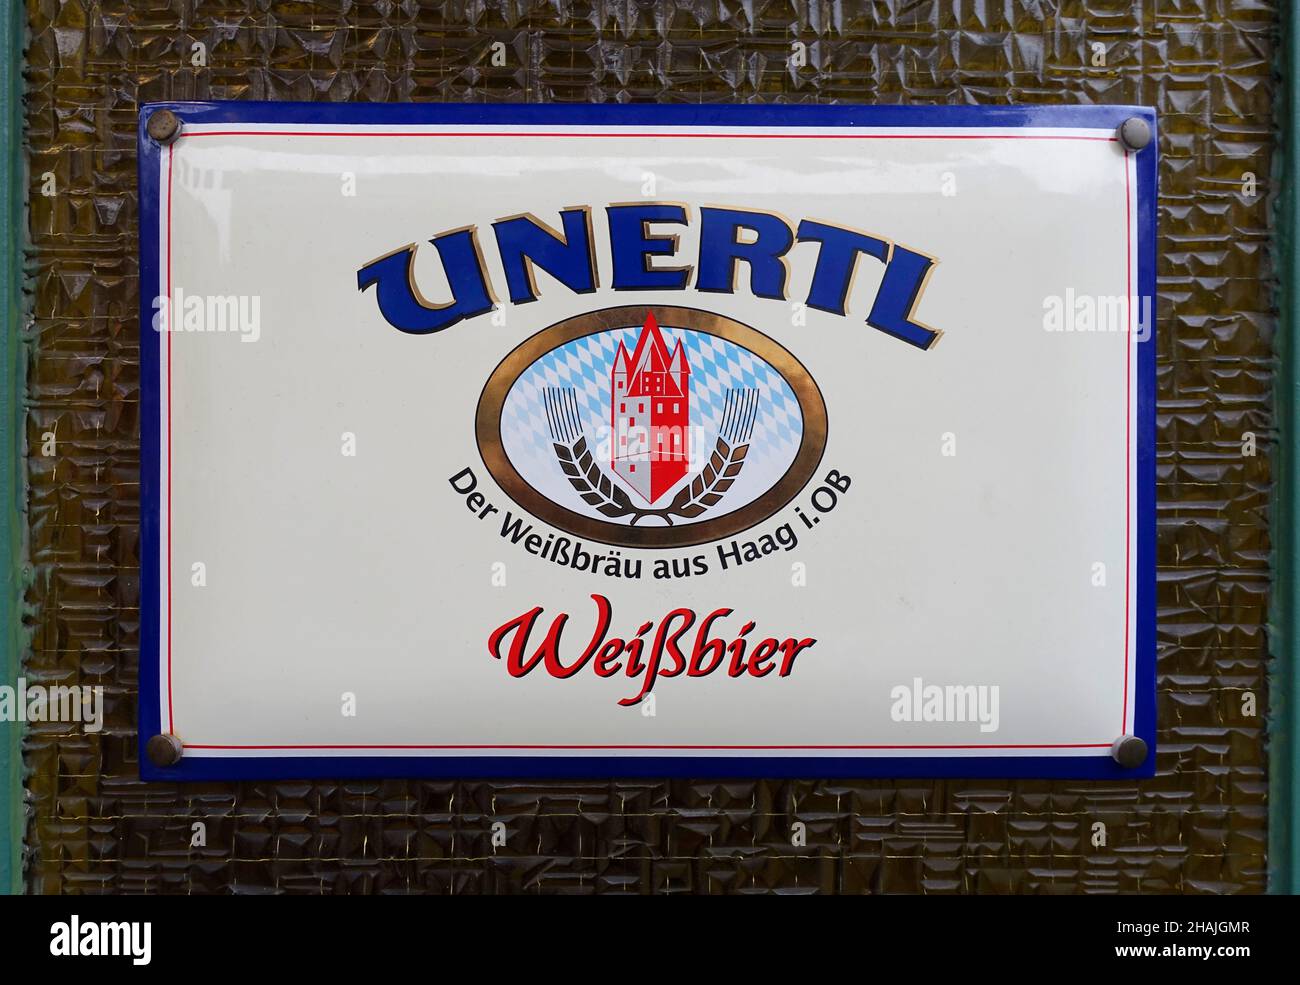 Company logo Unertl, Germany Stock Photo